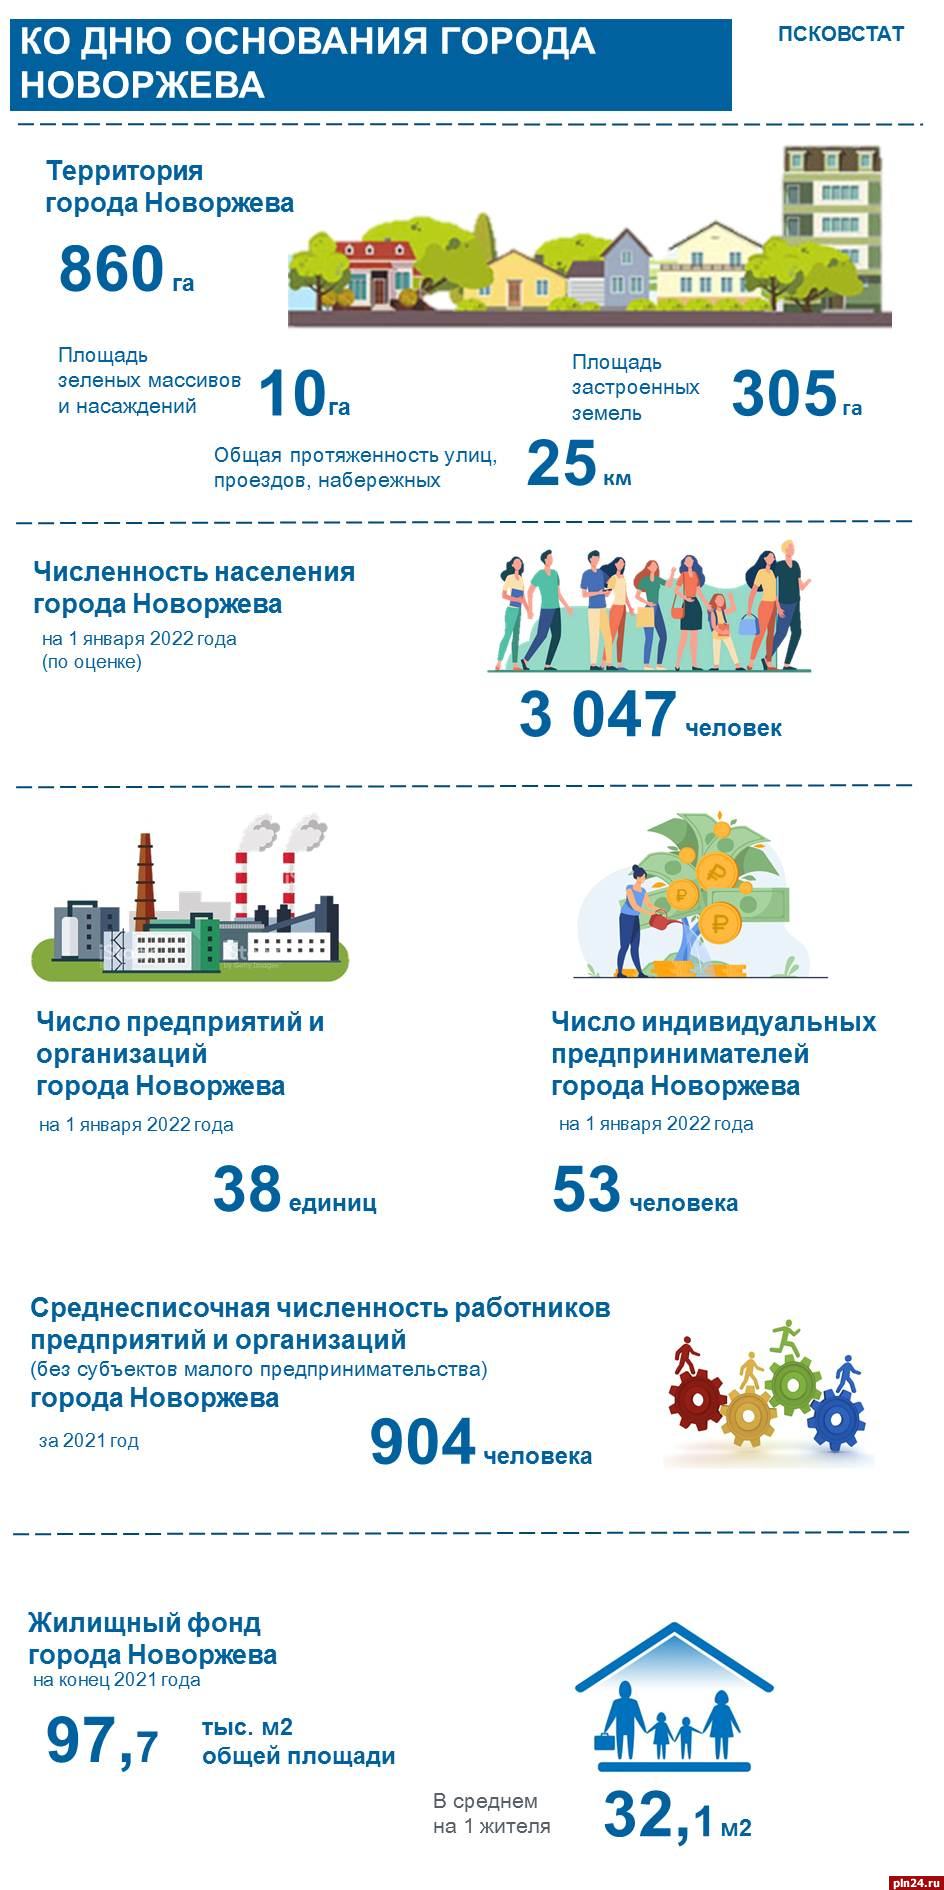 Более 28 тысяч рублей получают работники организаций в Новоржеве